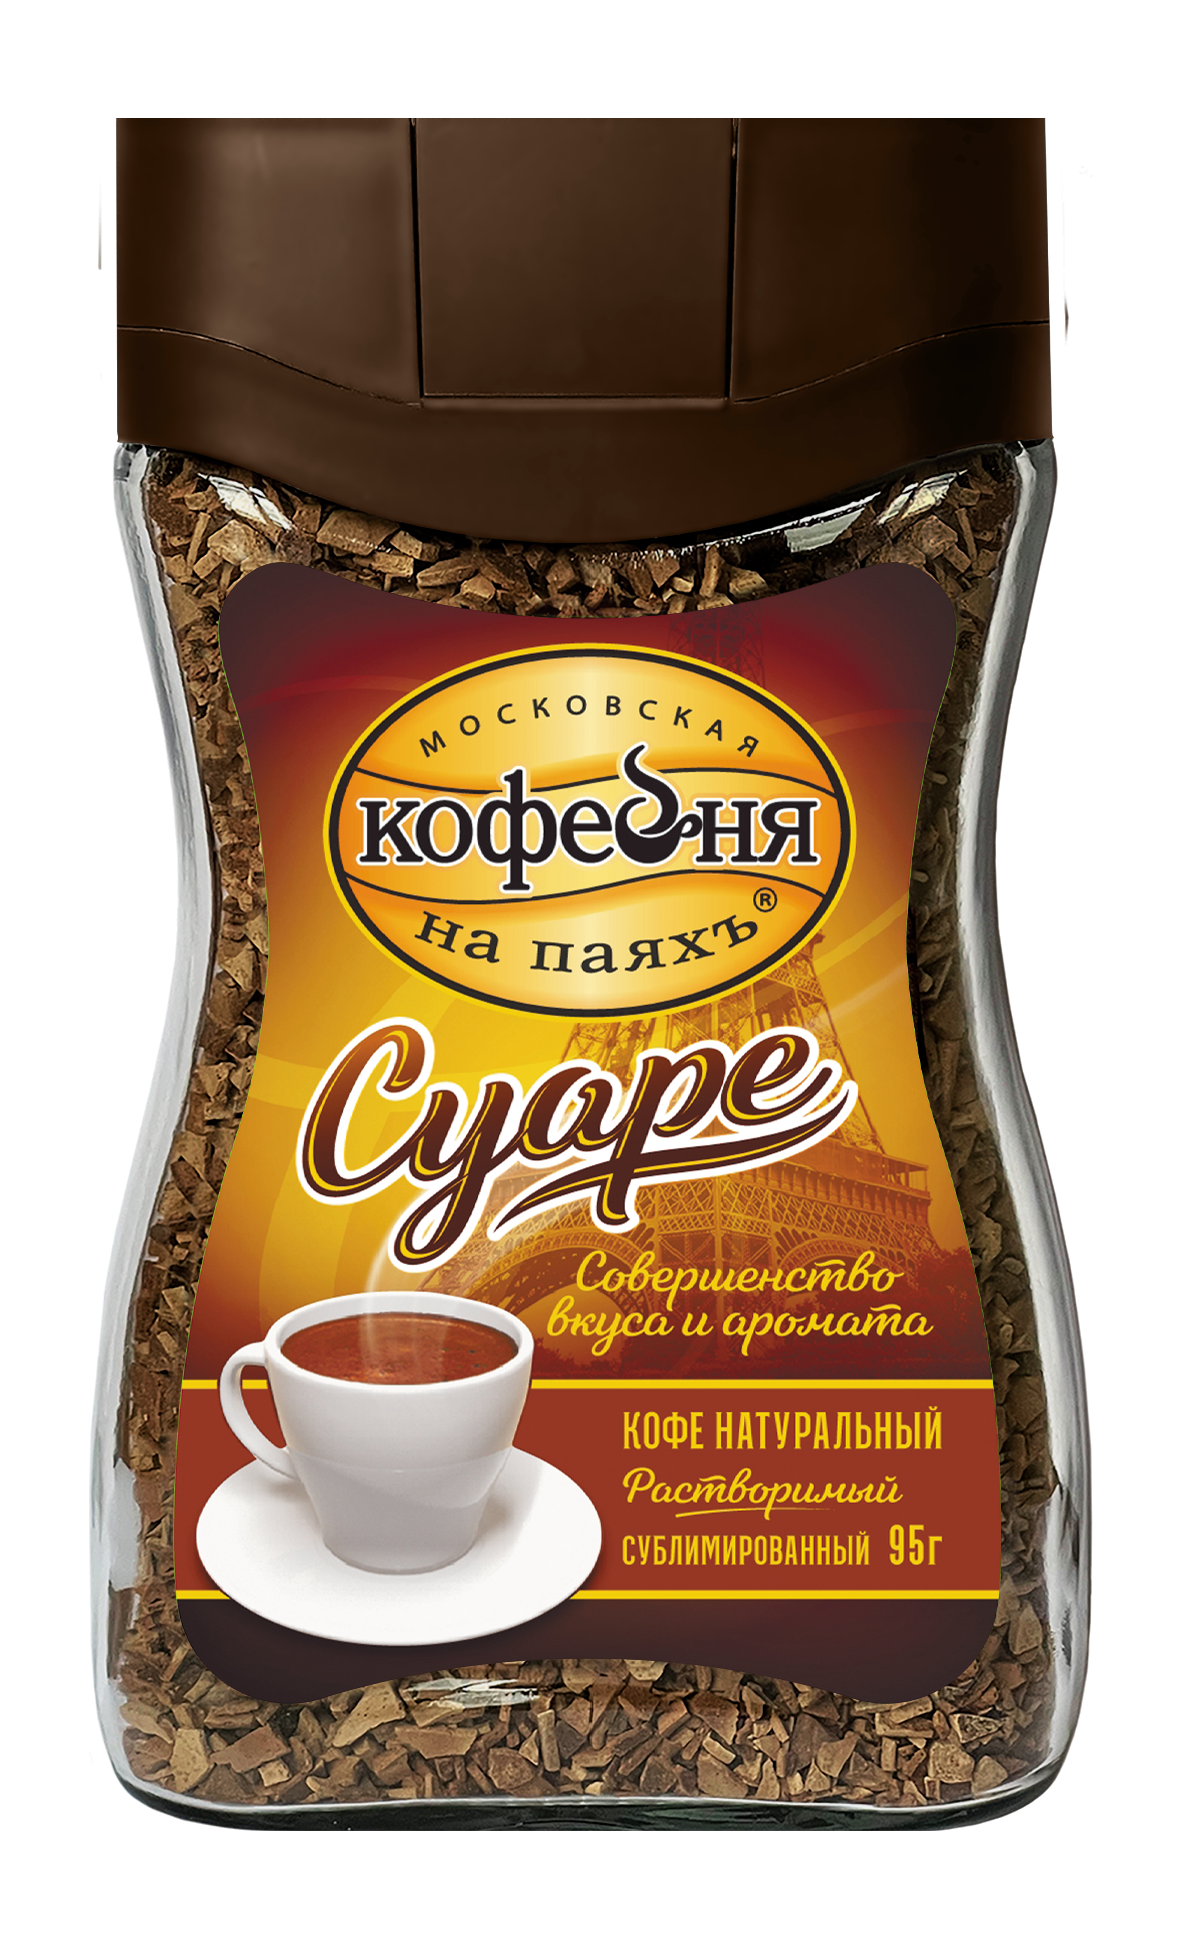 Кофе растворимый сублимированный Московская кофейня на паяхъ Суаре, банка, 95 г - отзывы покупателей на маркетплейсе Мегамаркет | Артикул: 100023256386